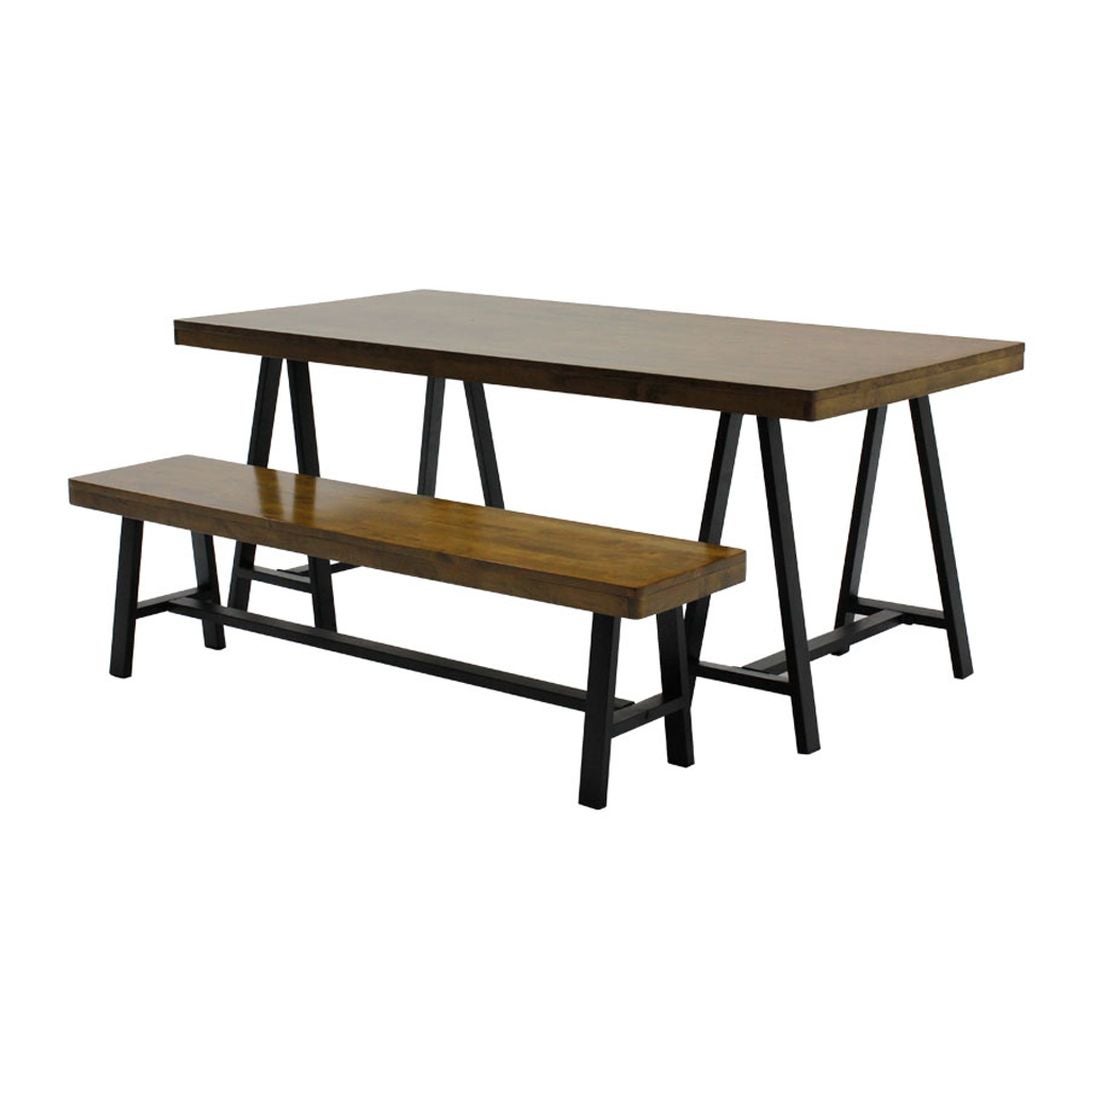 โต๊ะทานอาหาร โต๊ะอาหารขาเหล็กท๊อปไม้ รุ่น Goblin-SB Design Square